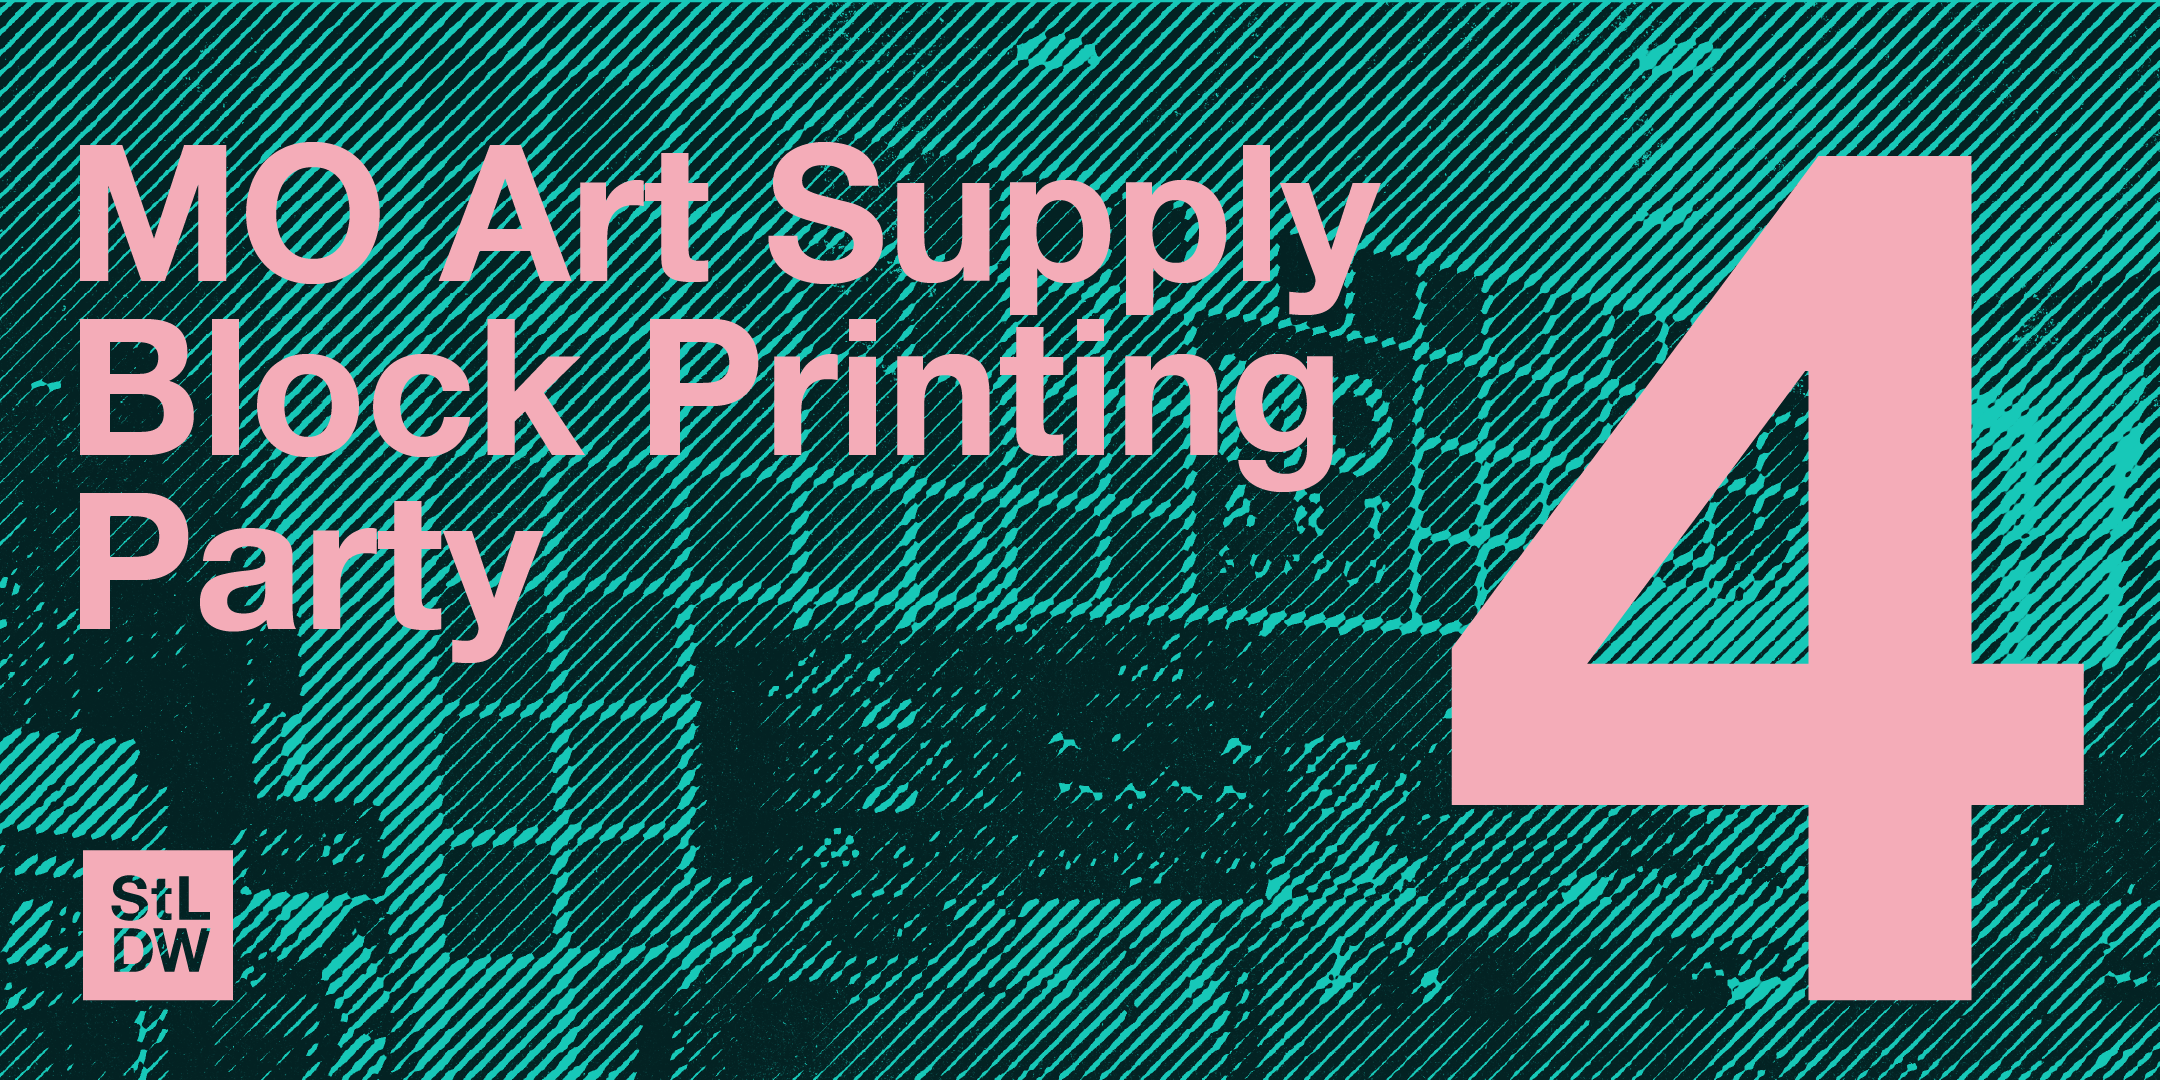 MO Art Supply Block Printing Party